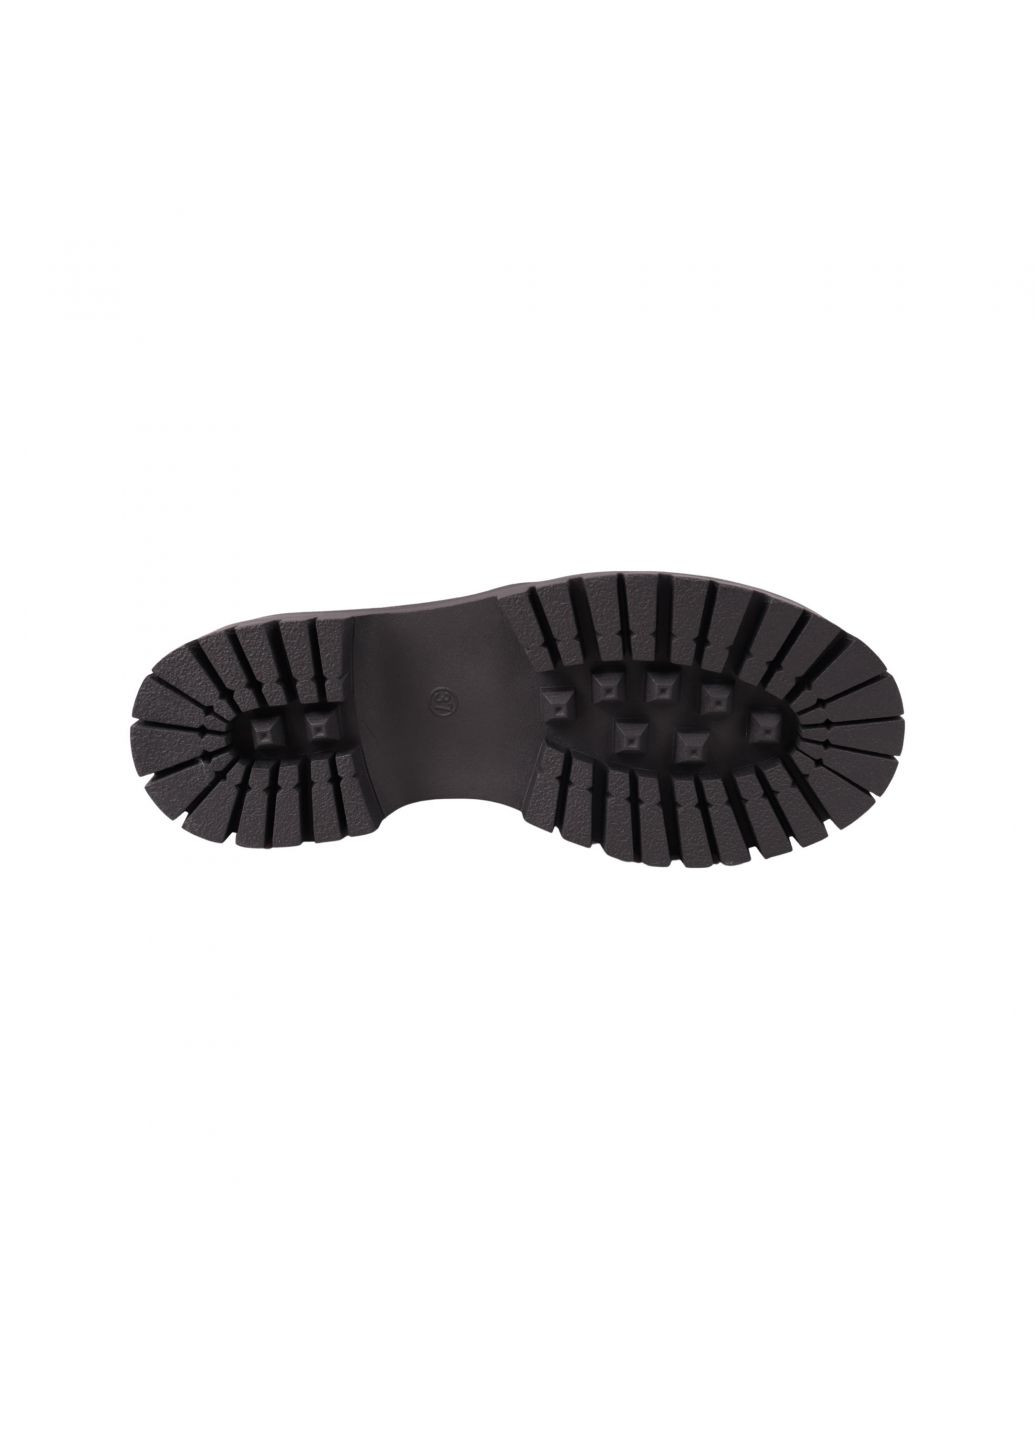 Туфли женские черные натуральная замша Melanda